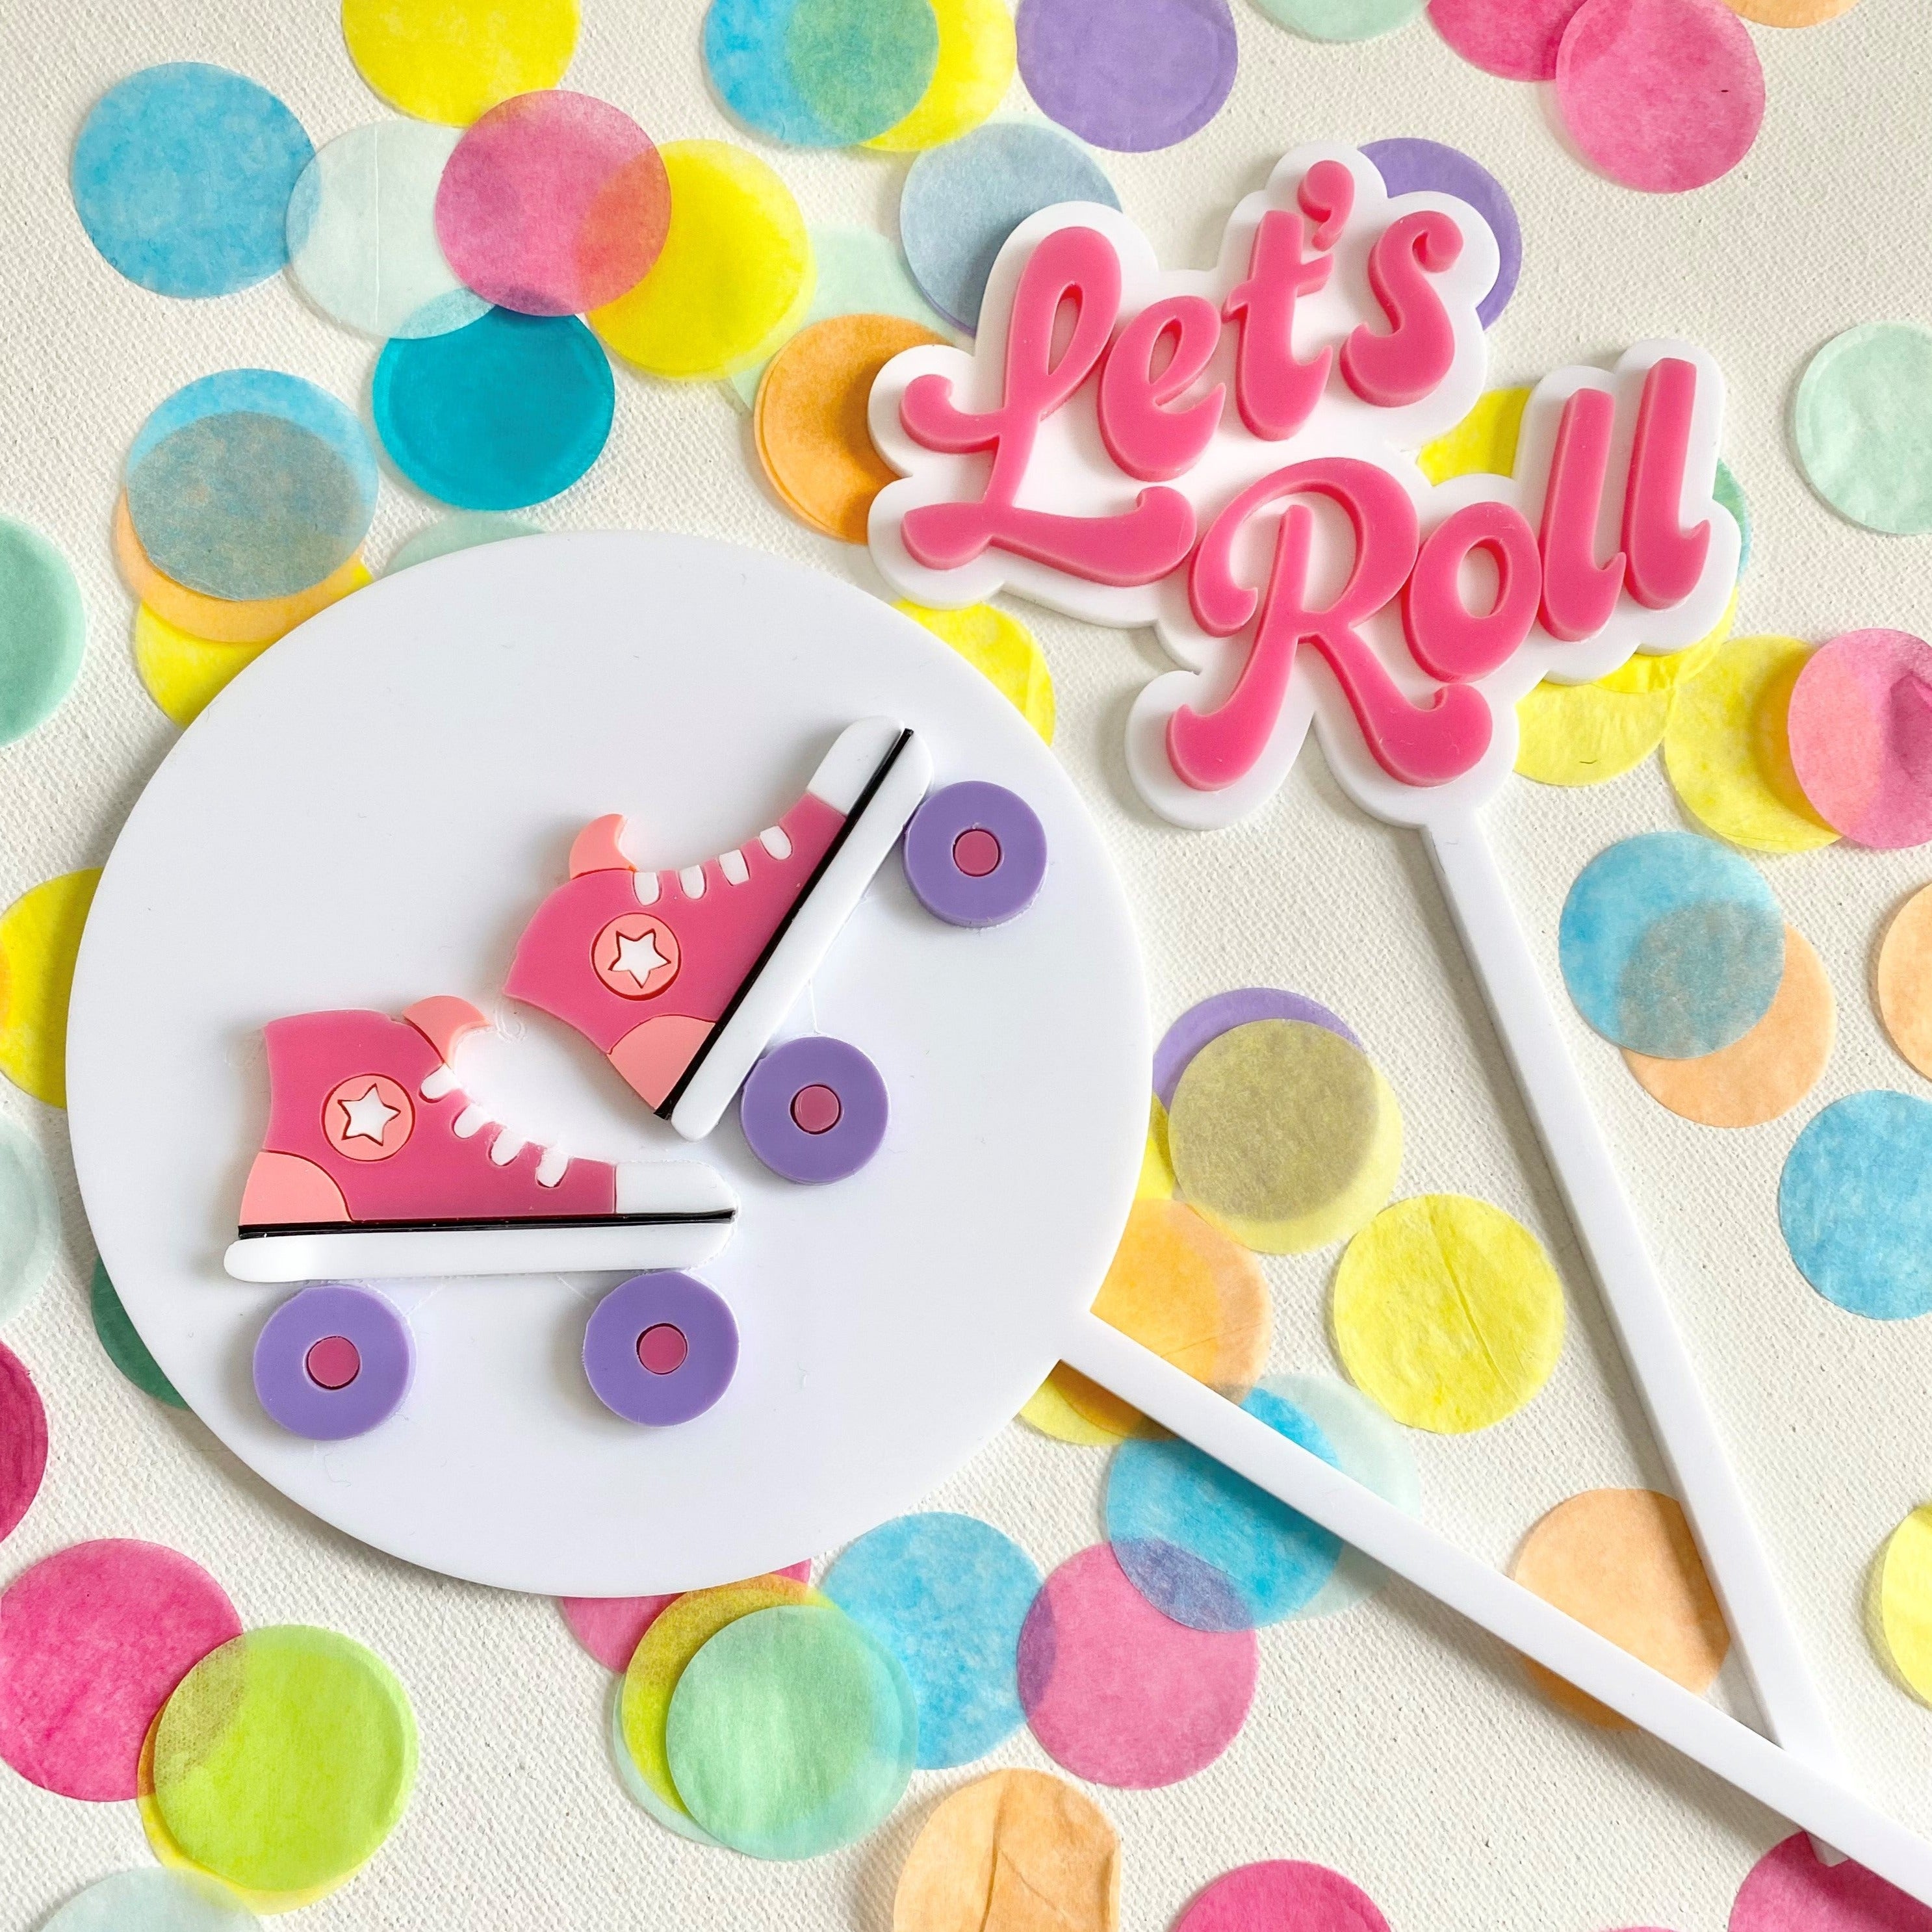 Retro Roller skate "Let's Roll" Cake Topper